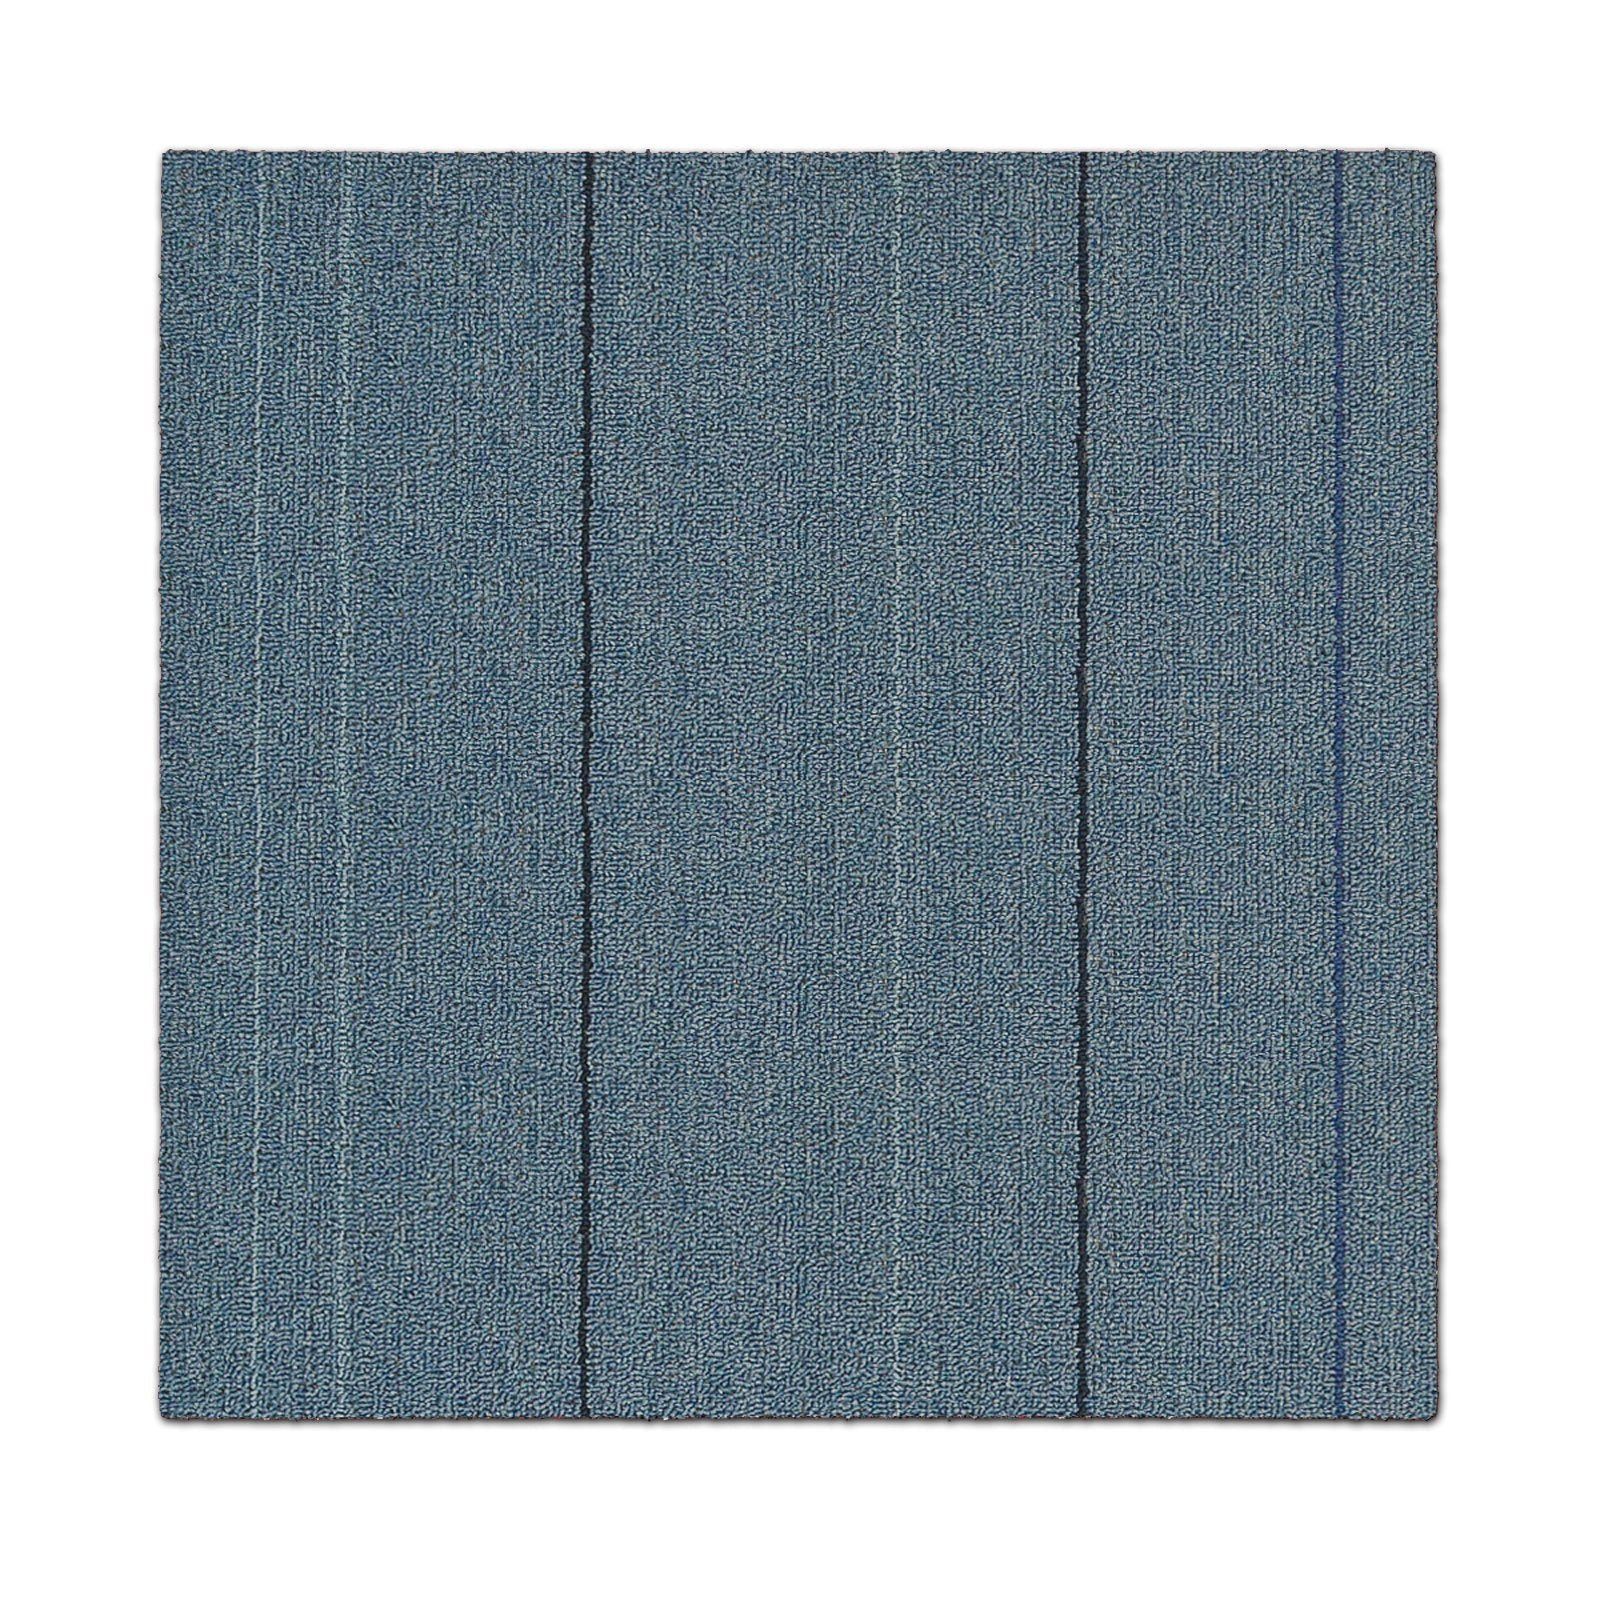 Farben, Bodenschutz, Teppichfliese San mm, B3 - cm, selbstliegend 50x50 Fliese, Marino, Blau quadratisch, Karat, 4,5 verschiedene Höhe: